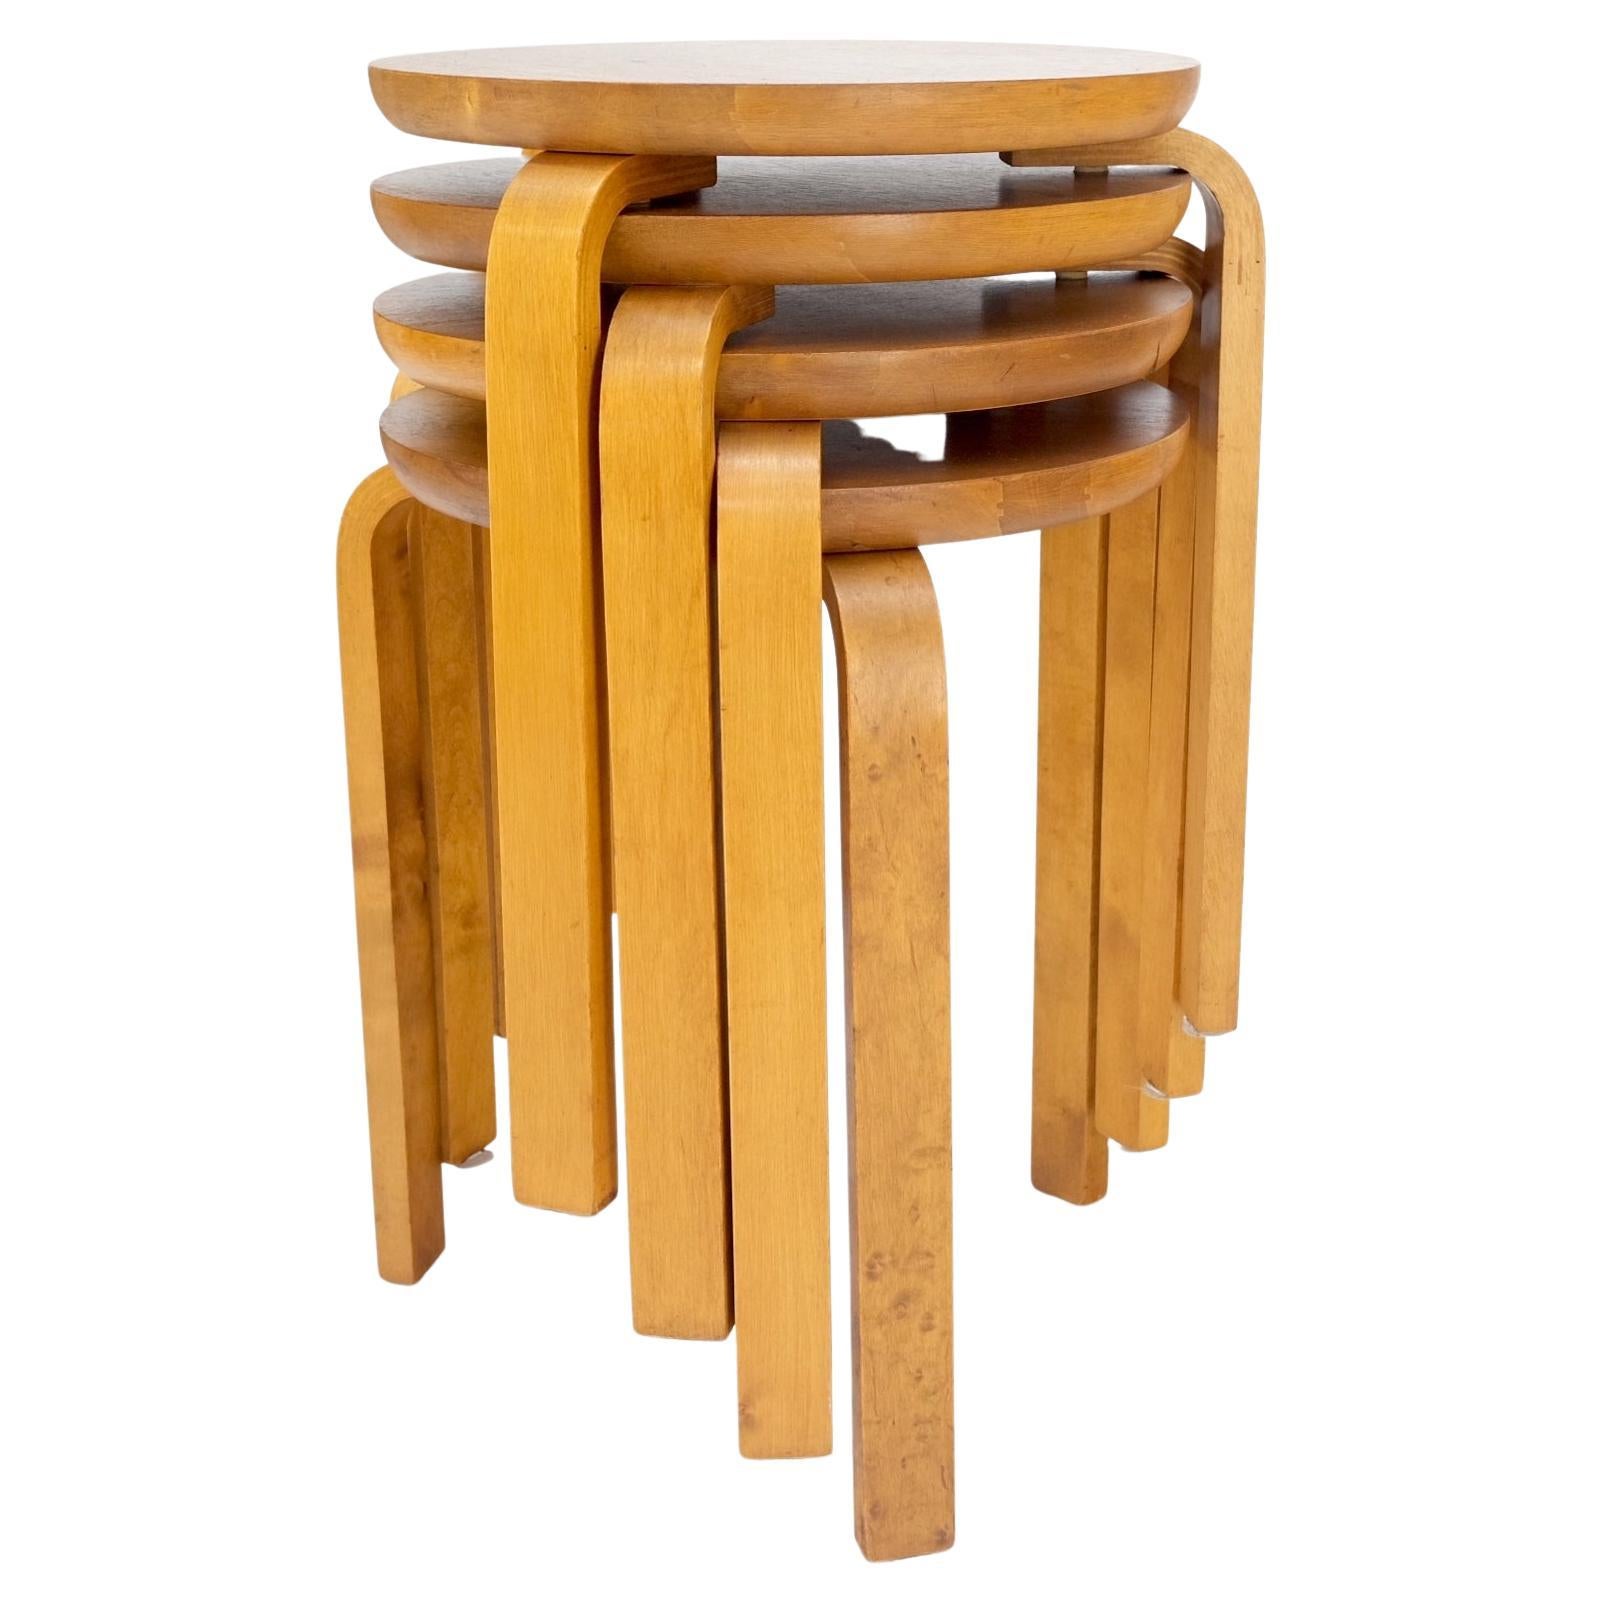 Ensemble de 4 tables gigognes rondes Alvar Aalto en bouleau à pieds pliés datant des années 1950, fabriquées en Suède